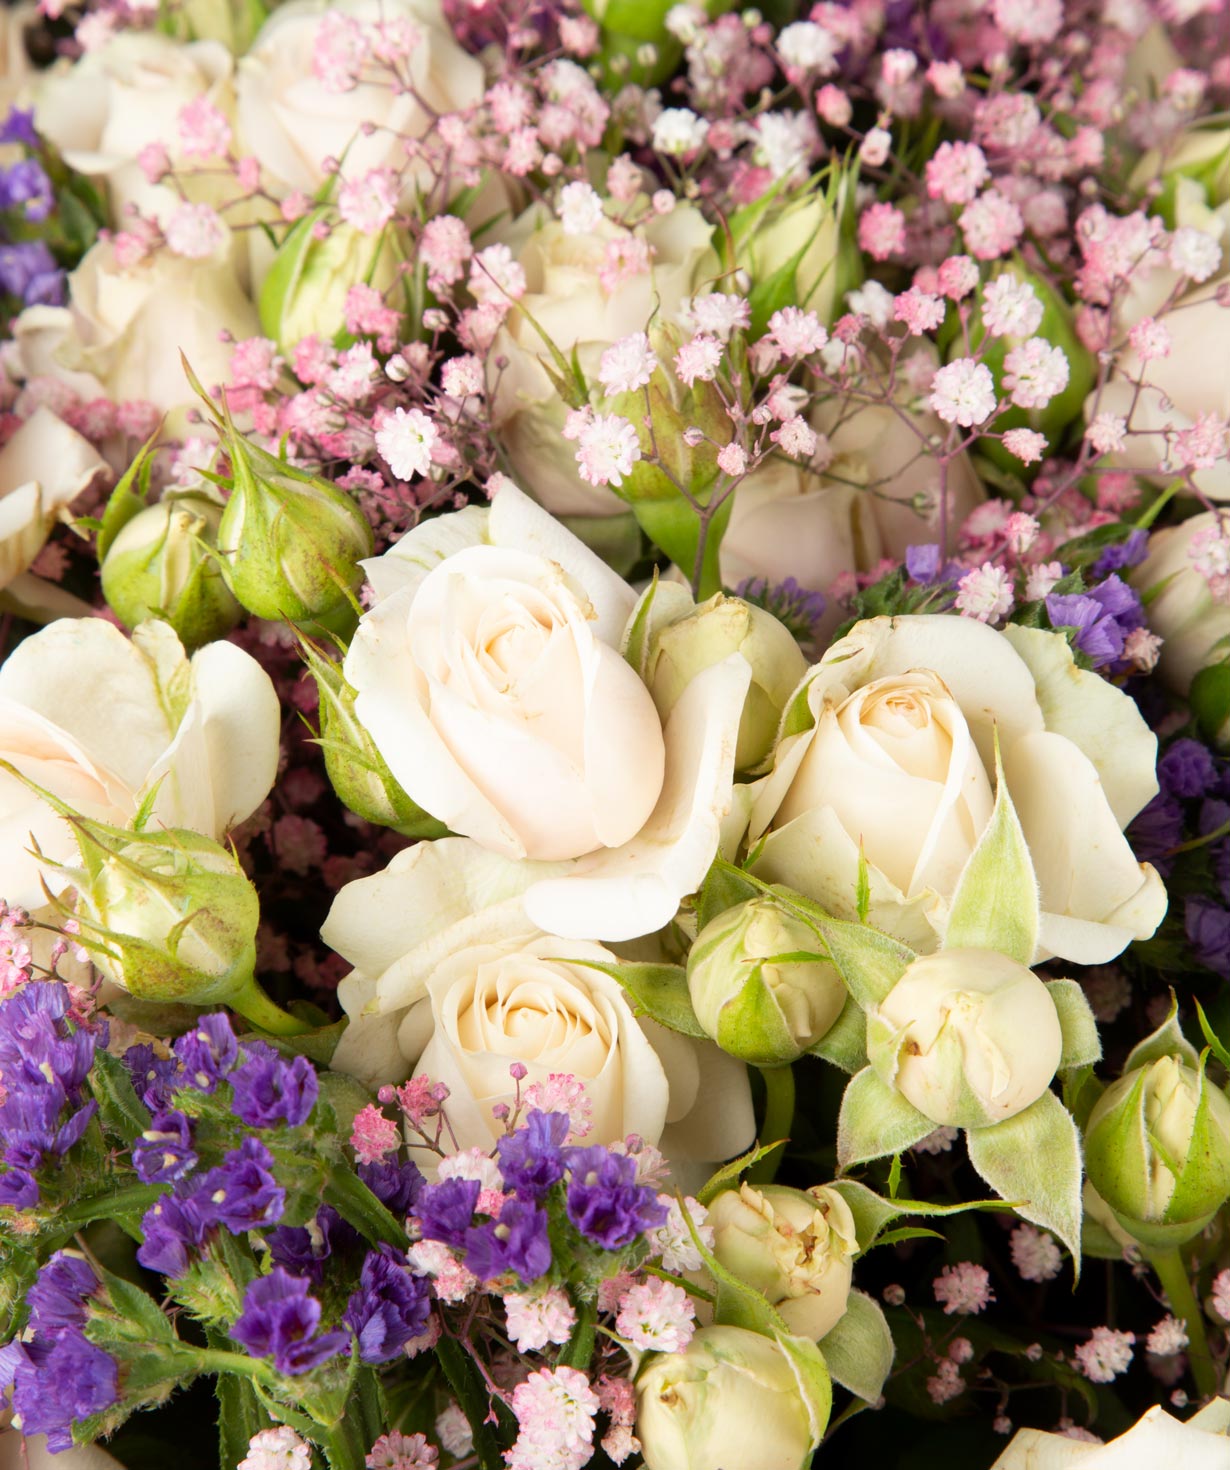 Ծաղկեփունջ «Զվեդրու»  վարդերով, լիմոնիումներով, գիպսոֆլայով